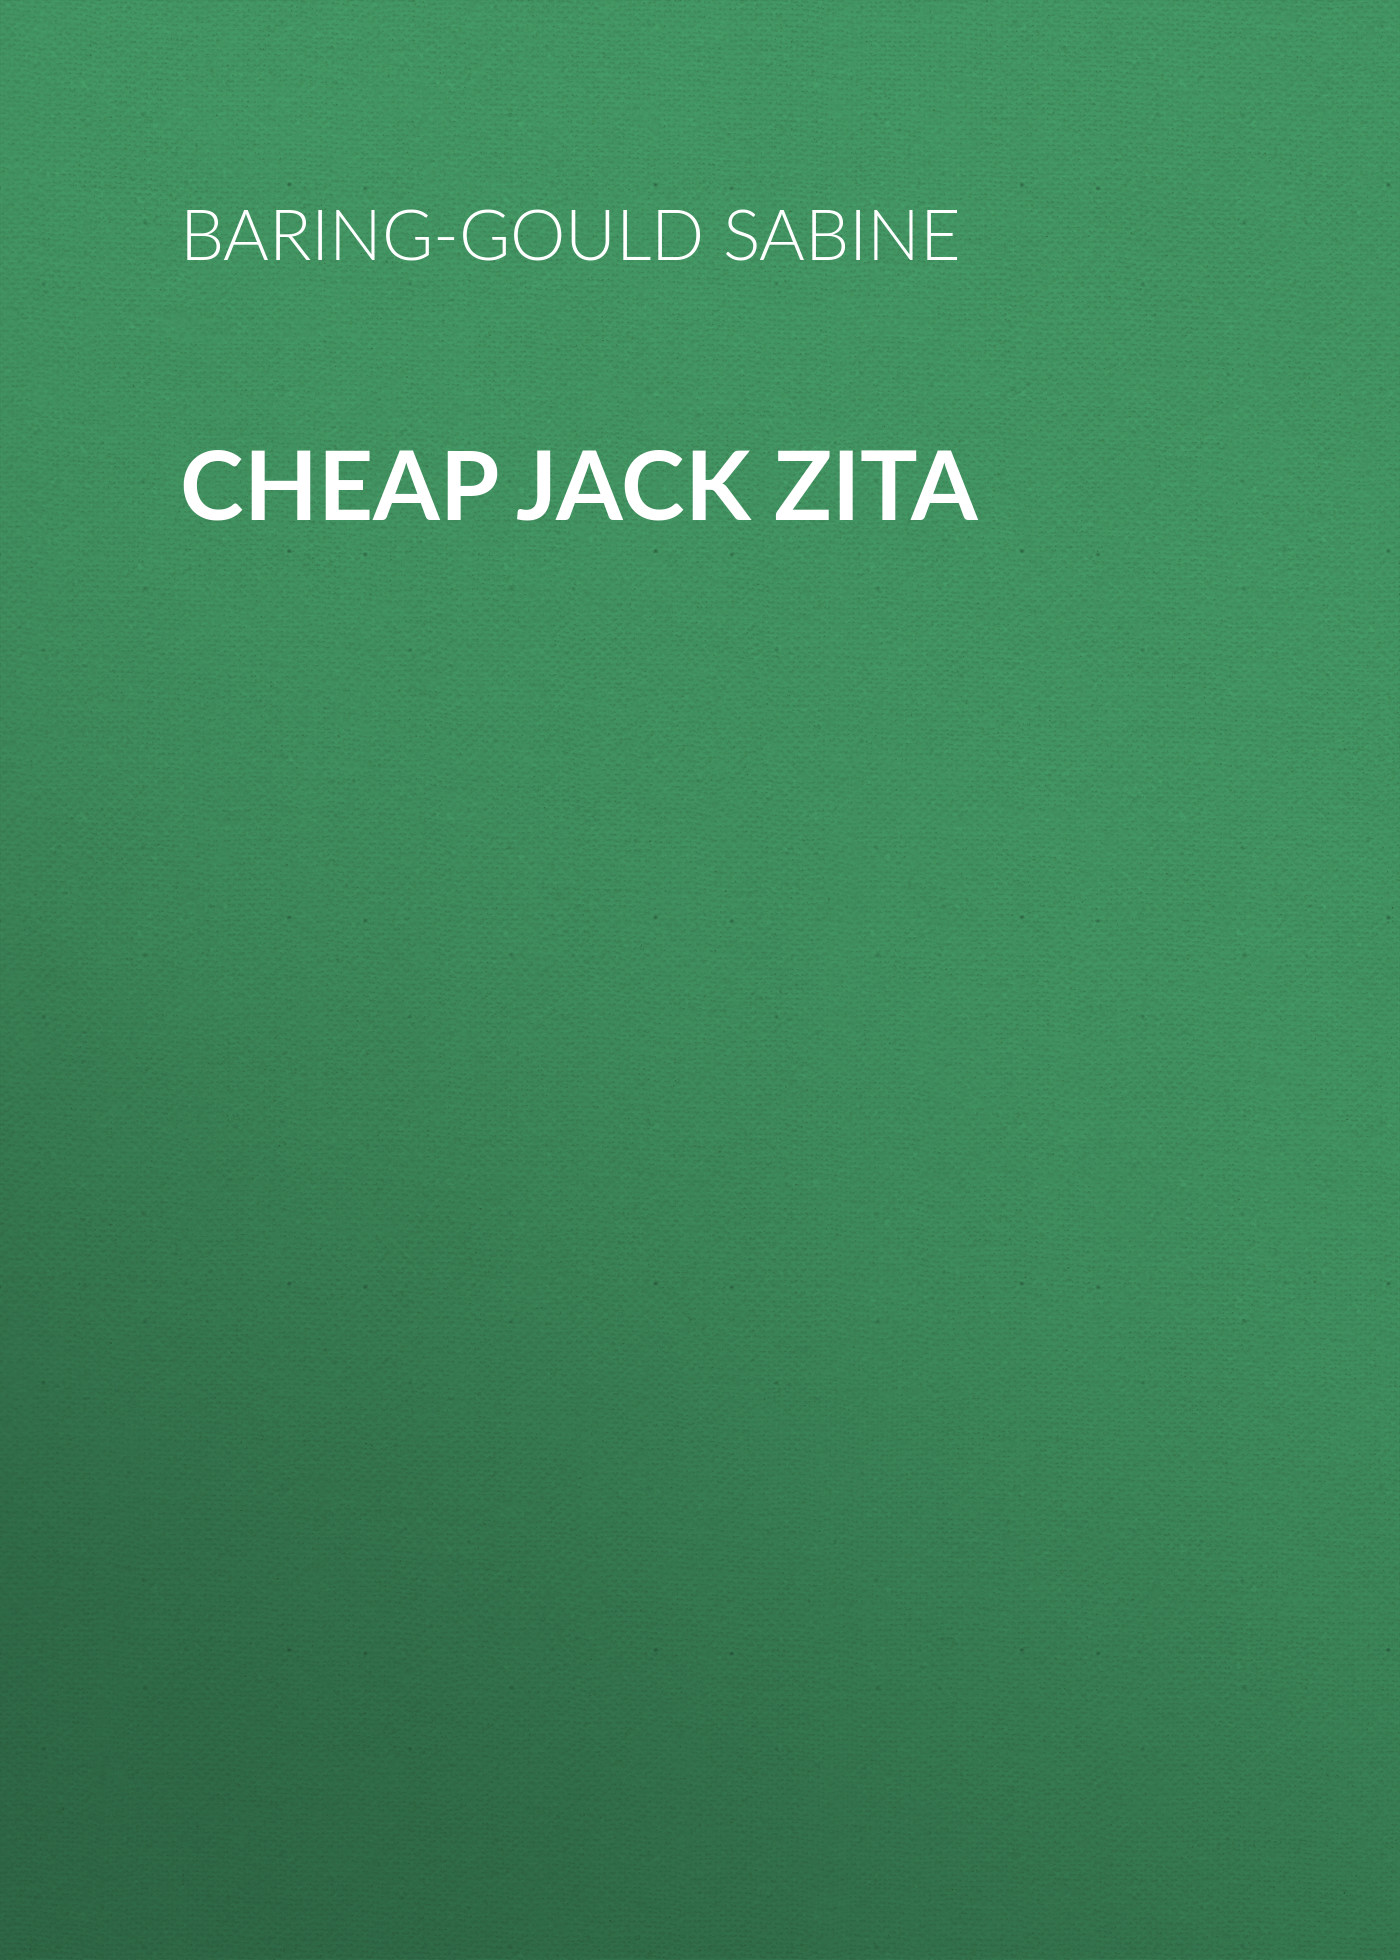 Книга Cheap Jack Zita из серии , созданная Sabine Baring-Gould, может относится к жанру Зарубежная классика, Зарубежная старинная литература. Стоимость электронной книги Cheap Jack Zita с идентификатором 36364686 составляет 0 руб.